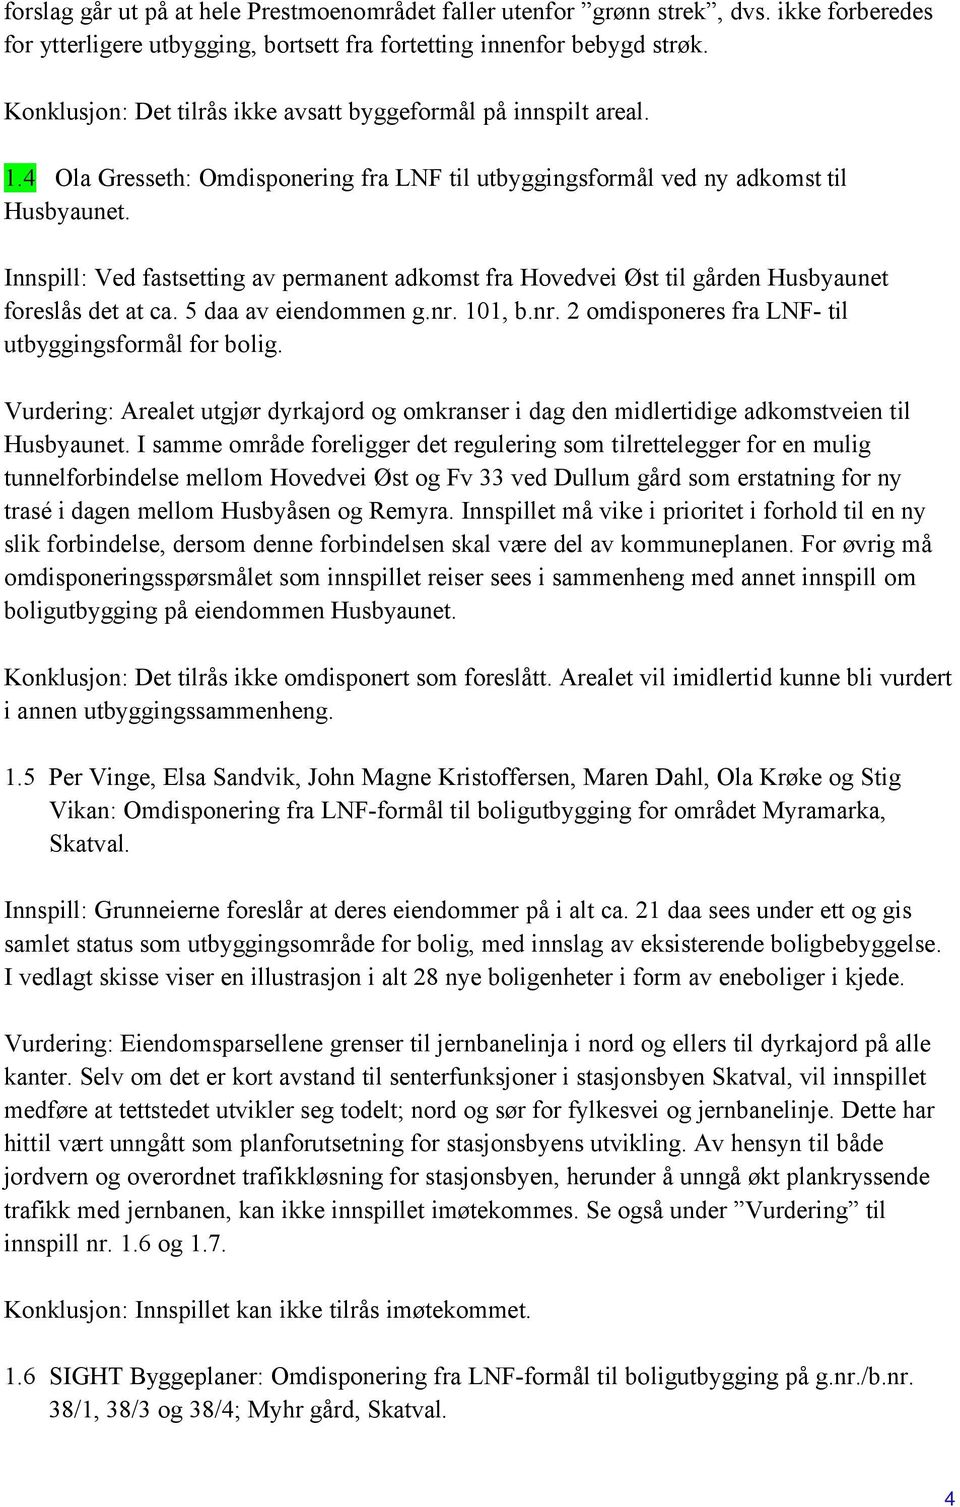 Innspill: Ved fastsetting av permanent adkomst fra Hovedvei Øst til gården Husbyaunet foreslås det at ca. 5 daa av eiendommen g.nr. 101, b.nr. 2 omdisponeres fra LNF- til utbyggingsformål for bolig.